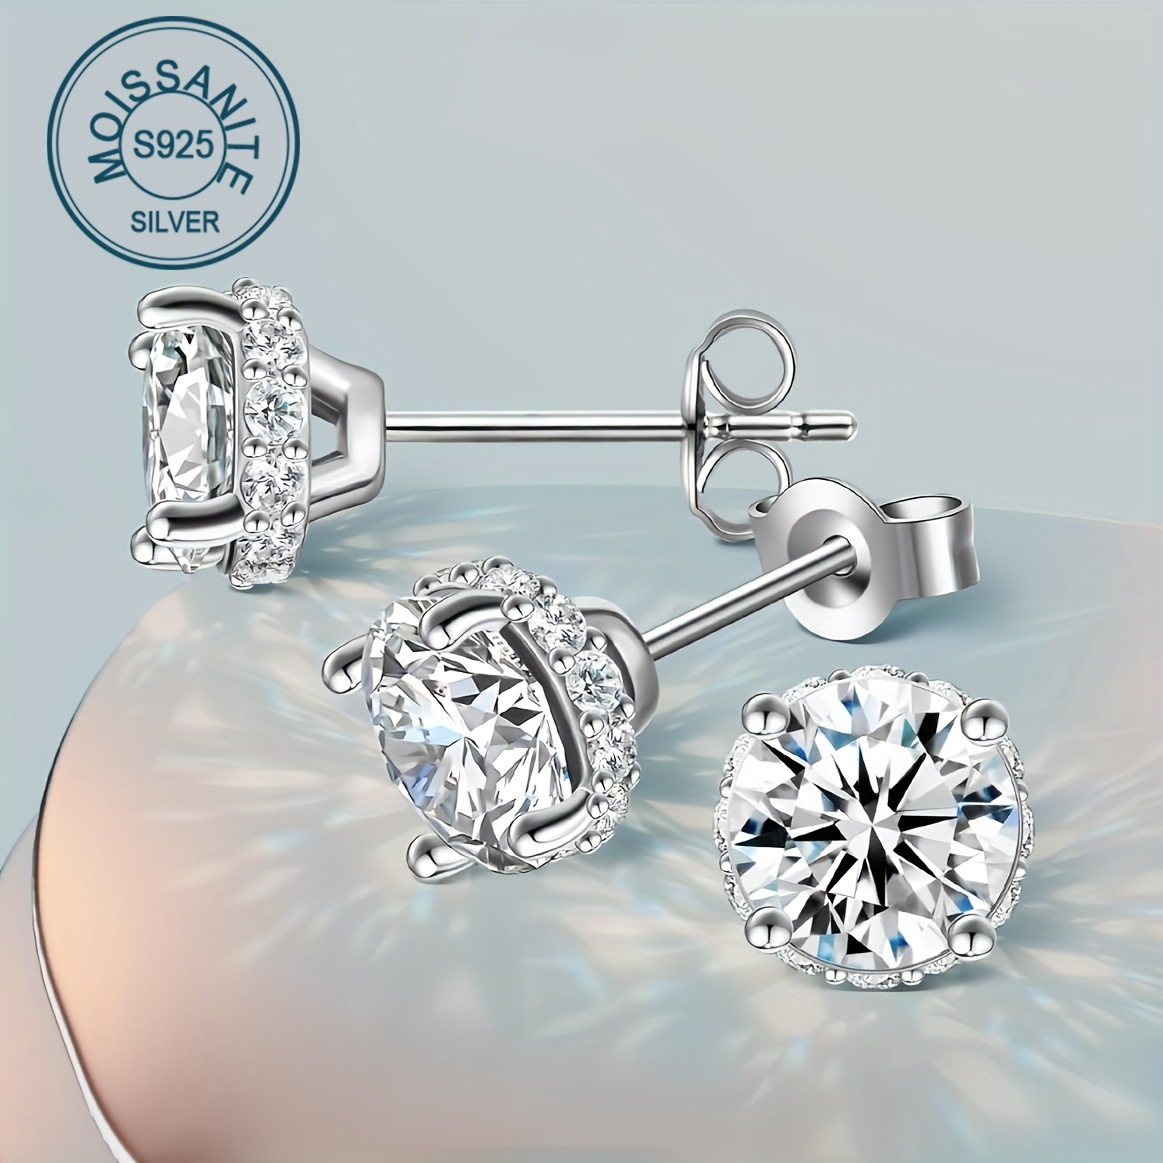 

1ct Moissanite Stud Earrings Elegant 925 Silver Niche Design Luxury Ear Piercing Jewelry Accessory Gifts For Women